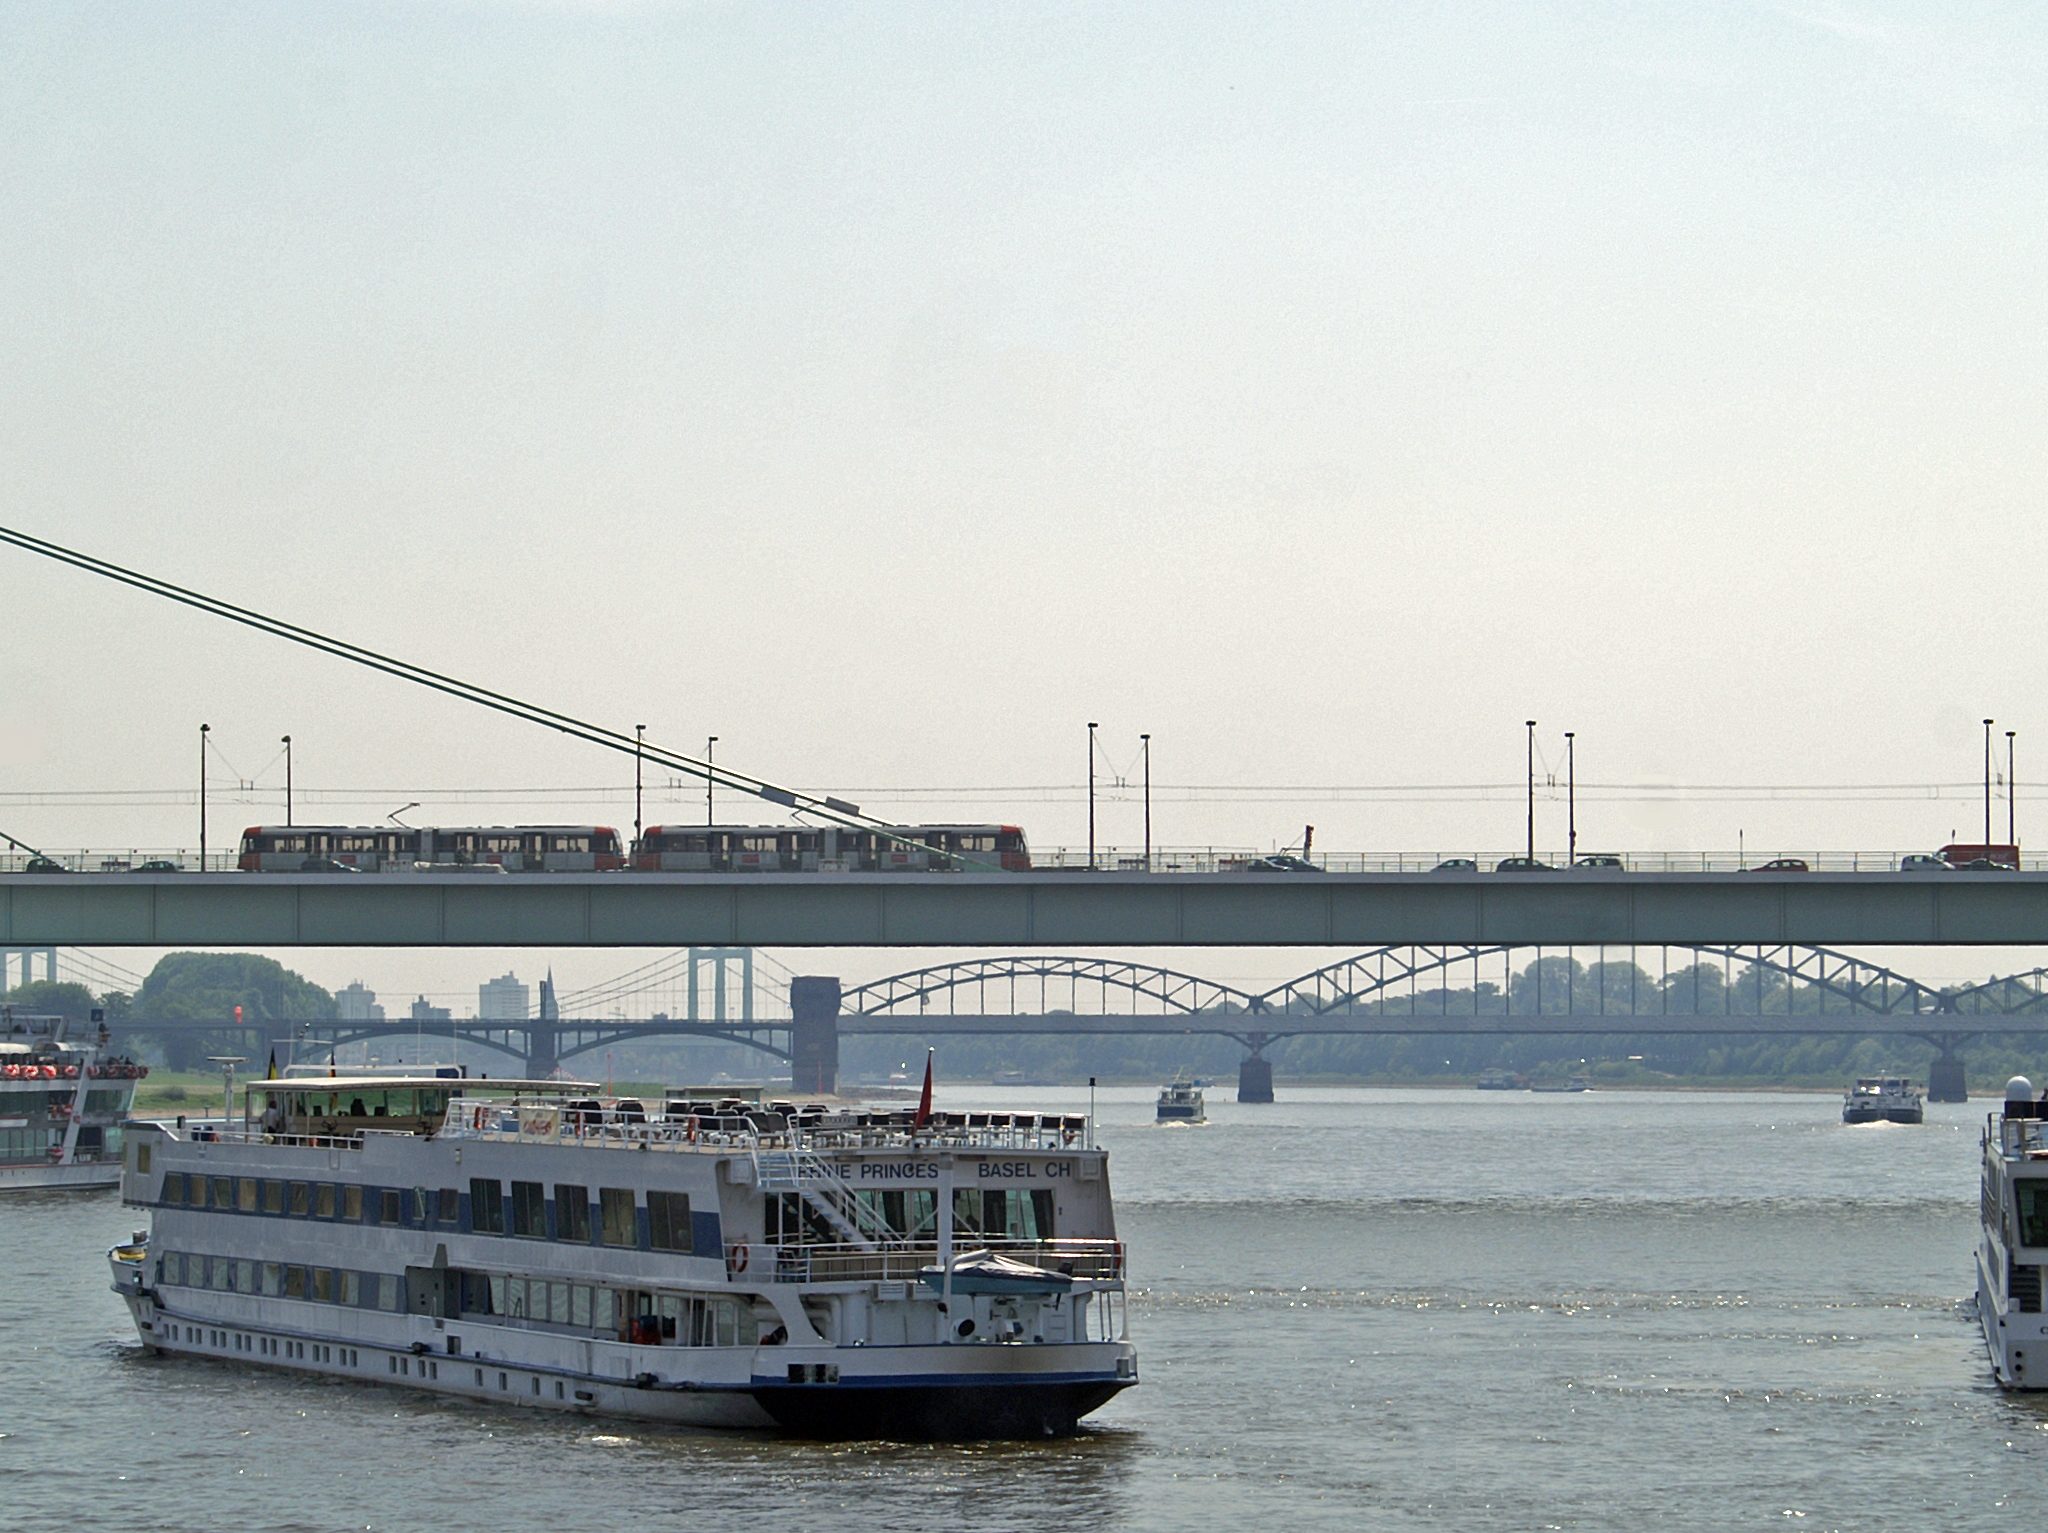 Twee riviercruiseschepen op de Rijn bij Keulen. (Foto Rolf Heinrich/Wikimedia)